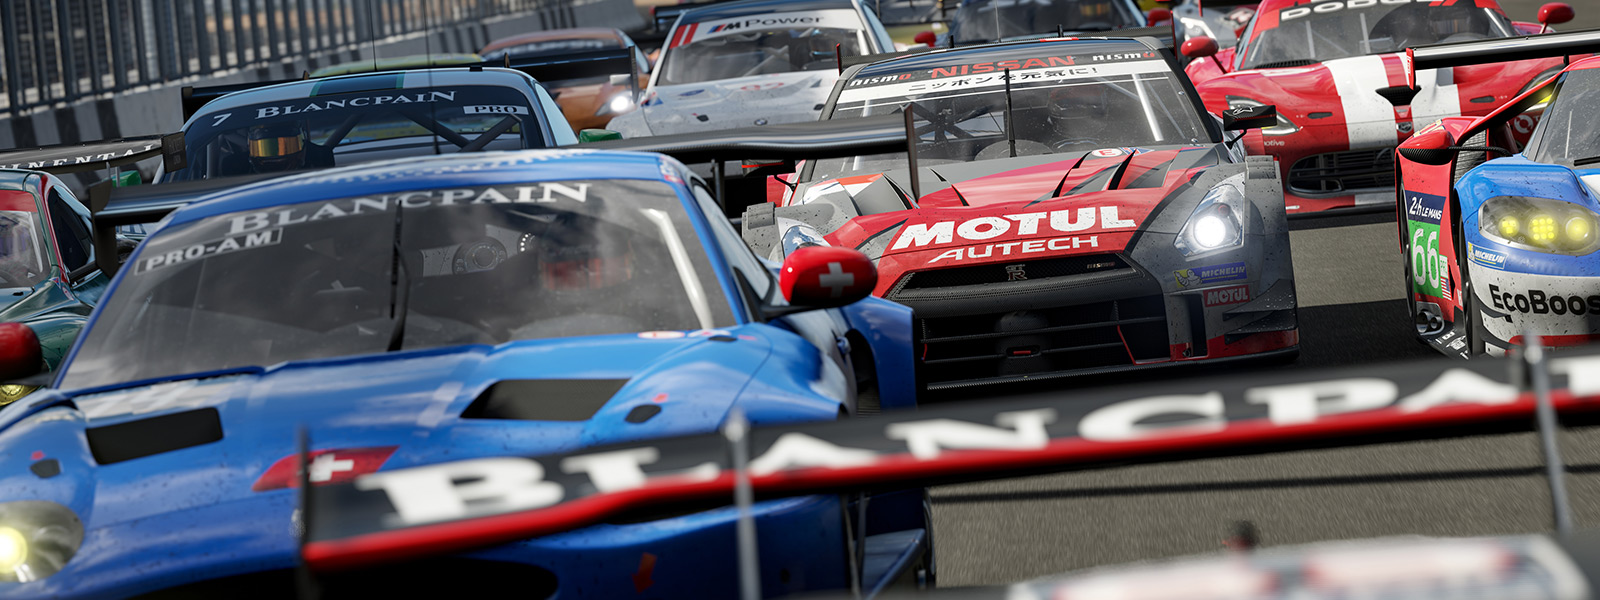 Forza Motorsport 7 oyunundan bir Forza yarışının başlangıç çizgisinin önden görünümü